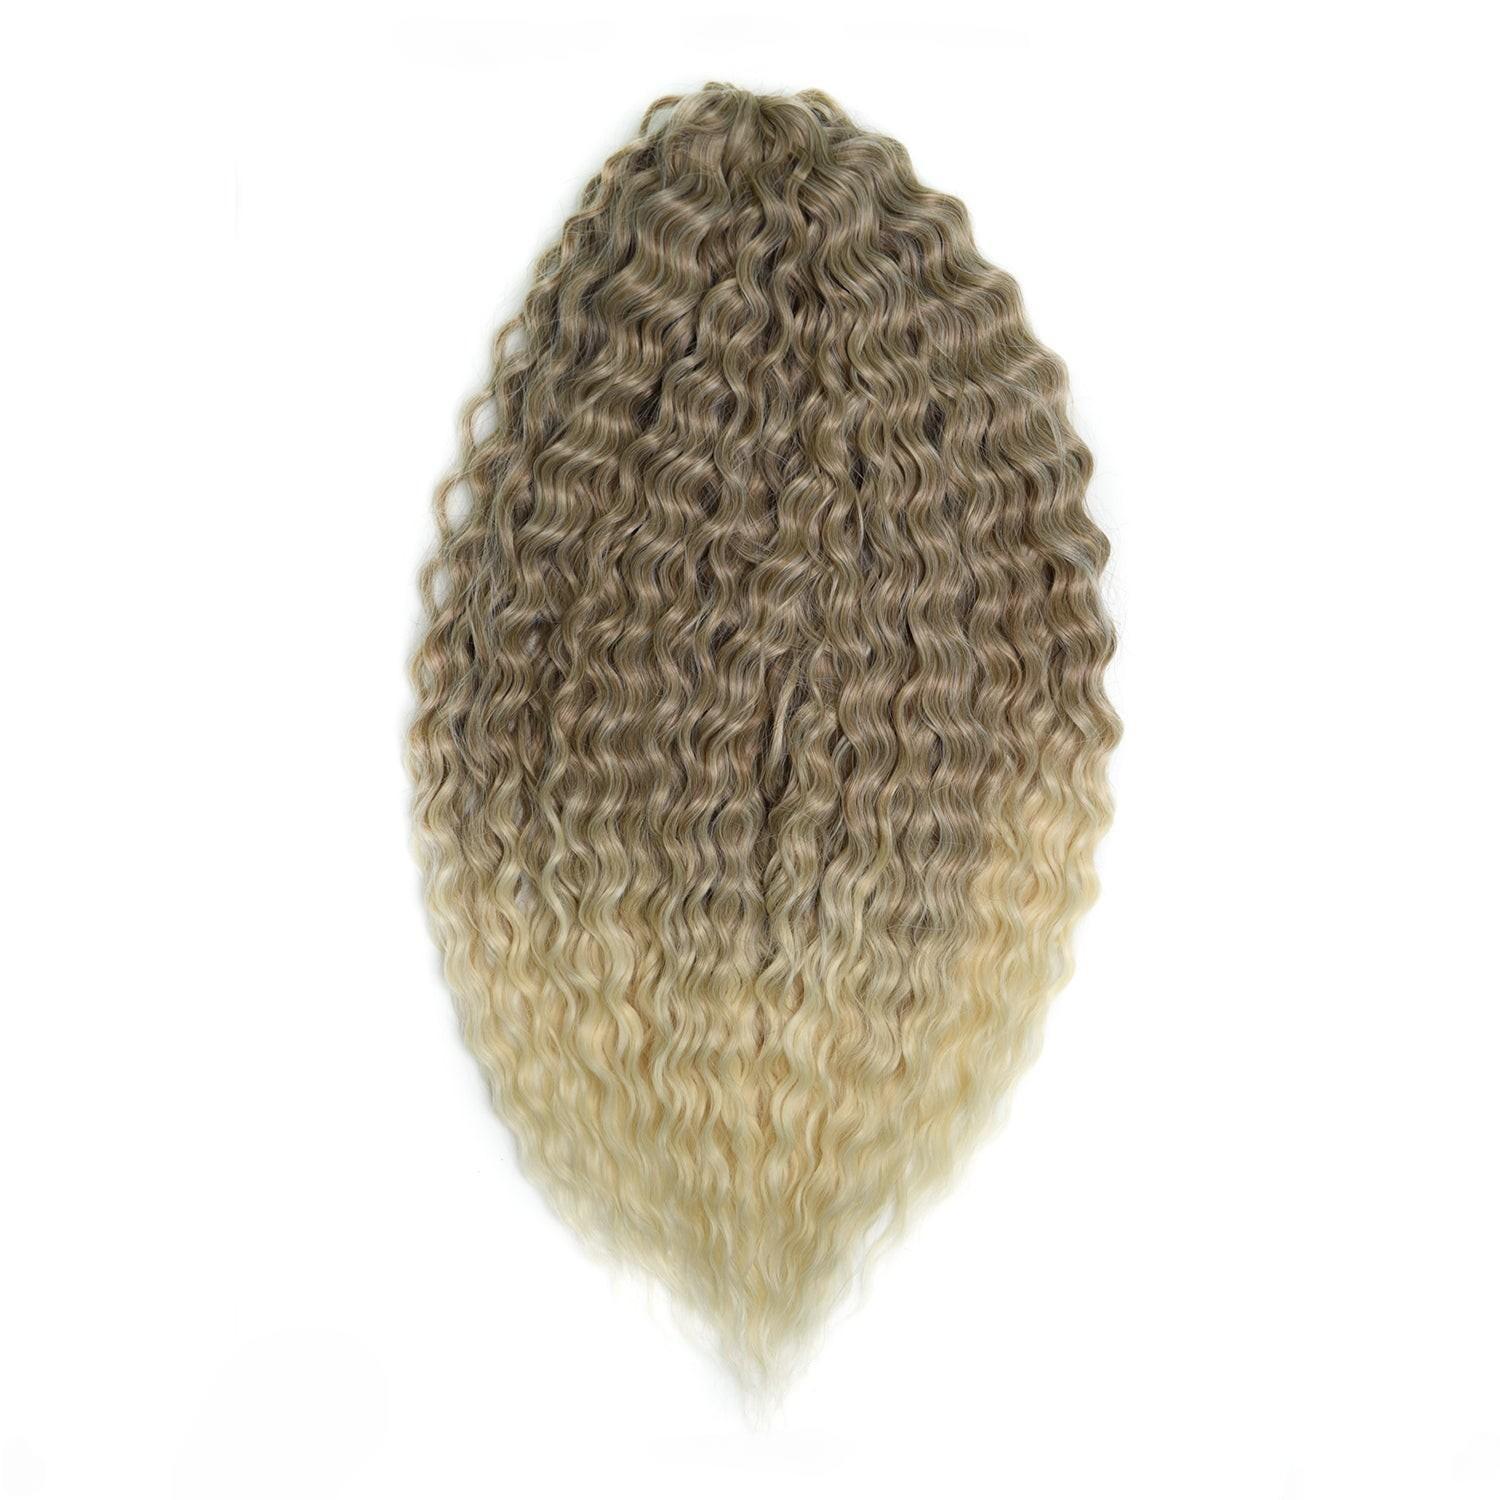 Афрокудри для плетения волос Ariel цвет 62 русый длина 60см вес 300г